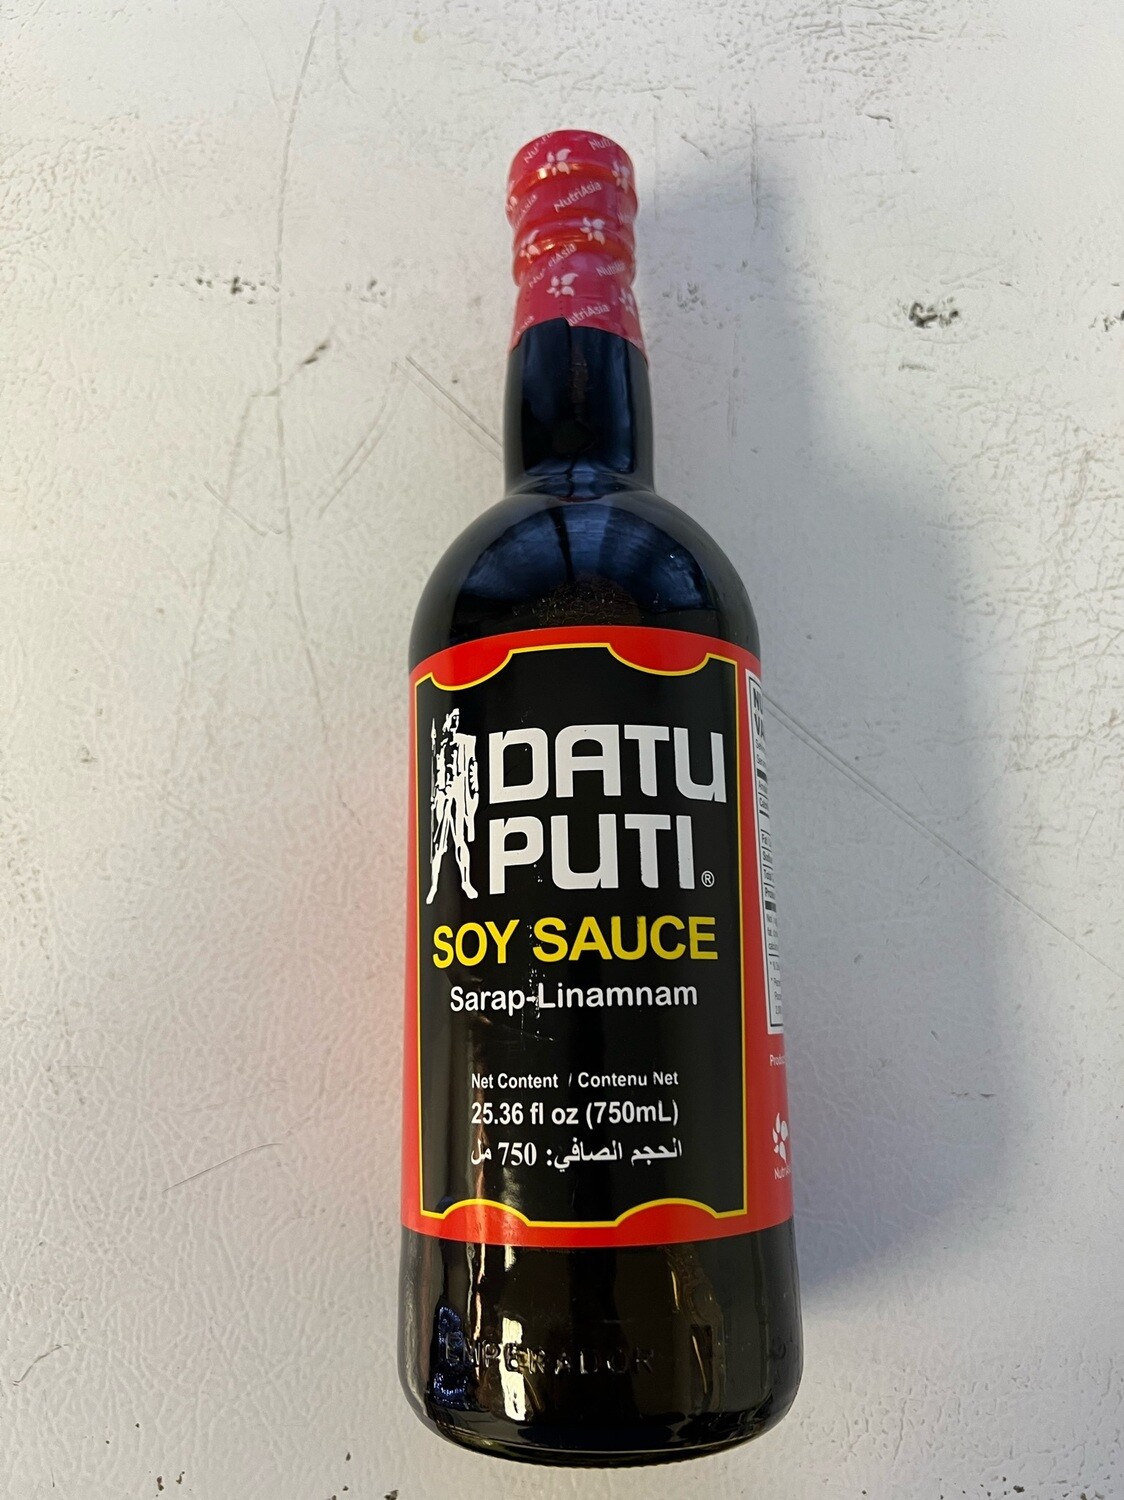 Date Puti Soy Sauce Bottle